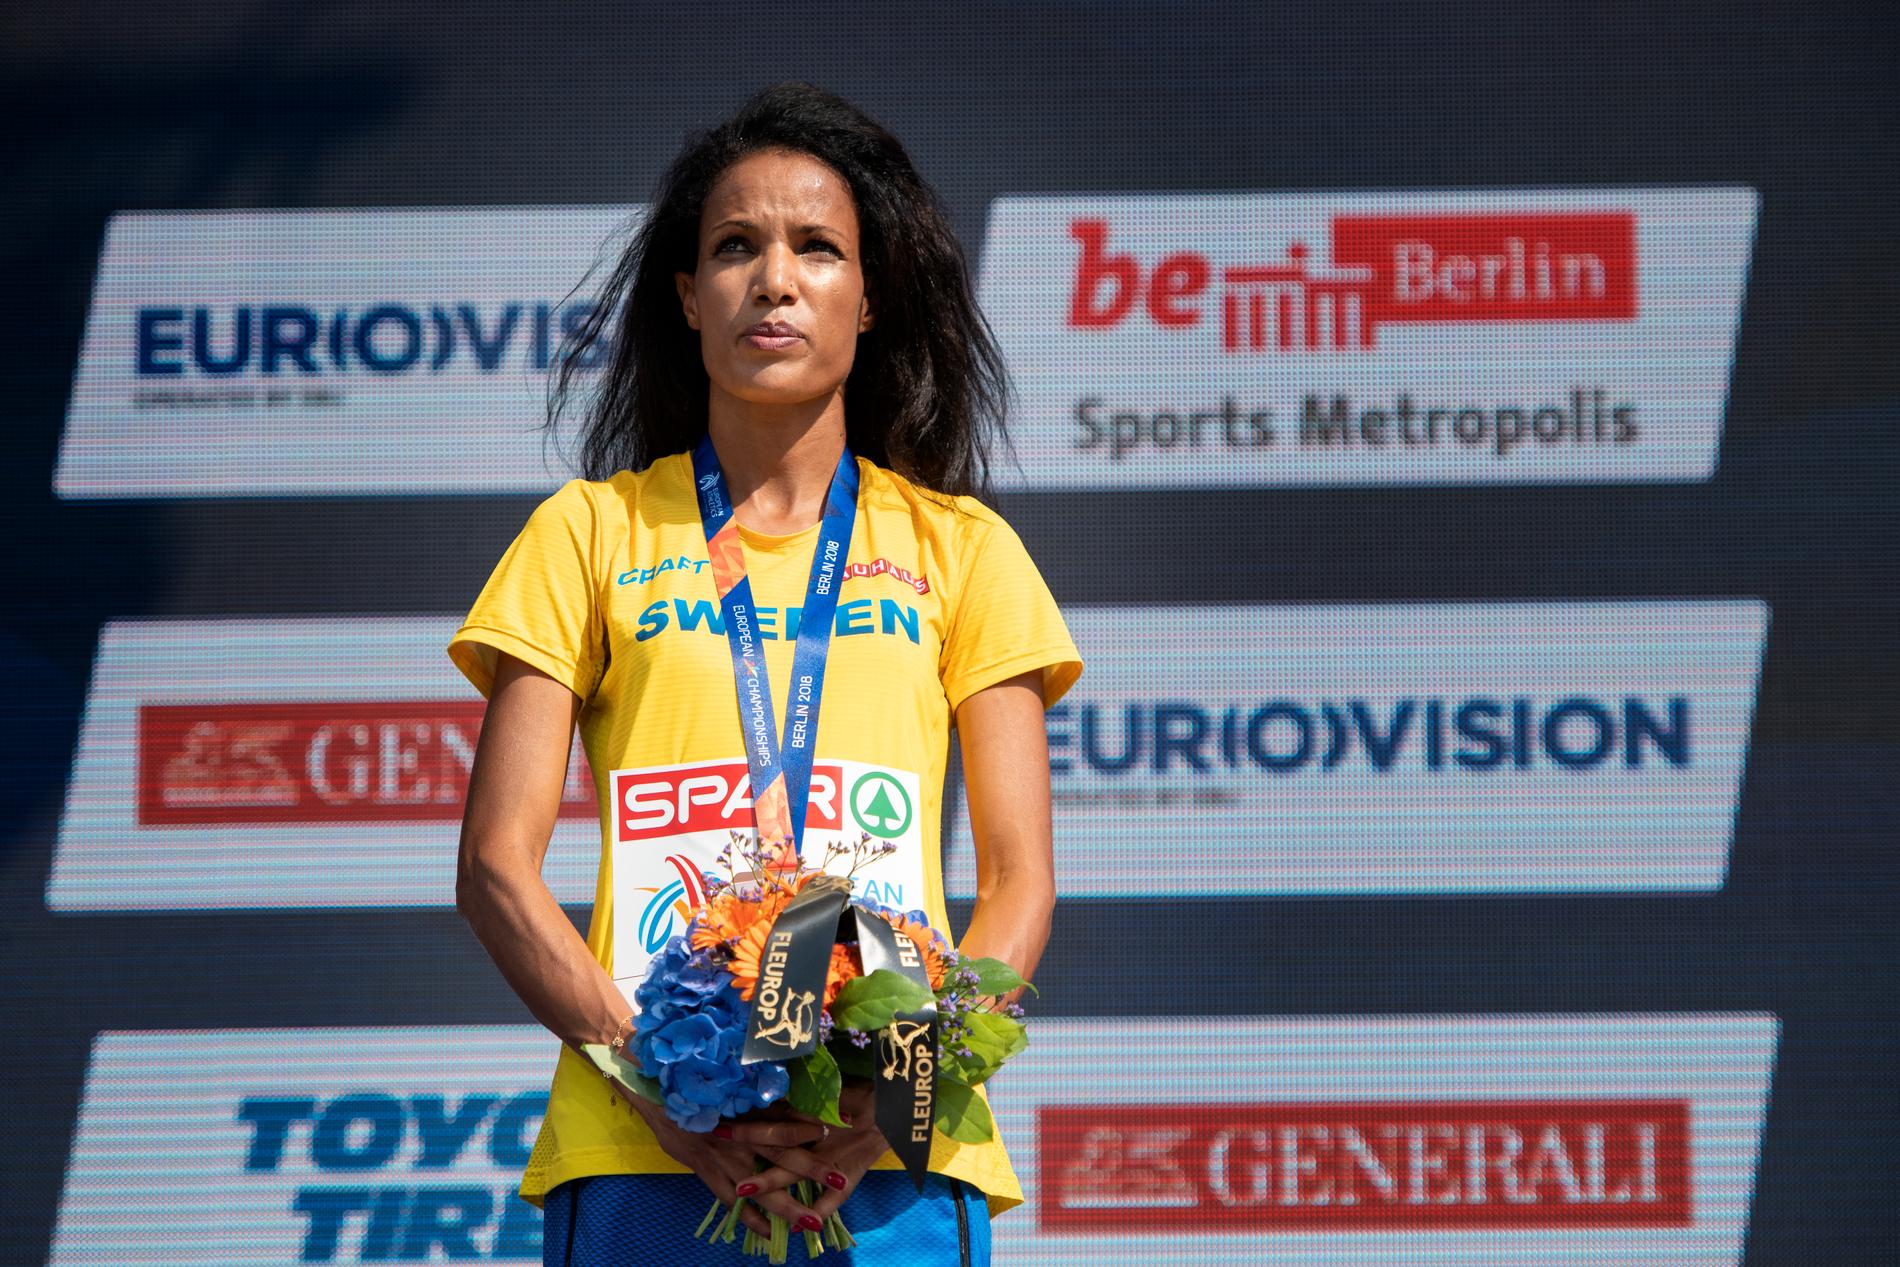 Meraf Bahta tog brons på 10 000 meter på friidrotts-EM i Berlin i somras, kort efter att nyheten om att hon misstänks för brott mot dopningsreglerna briserade. Arkivbild.